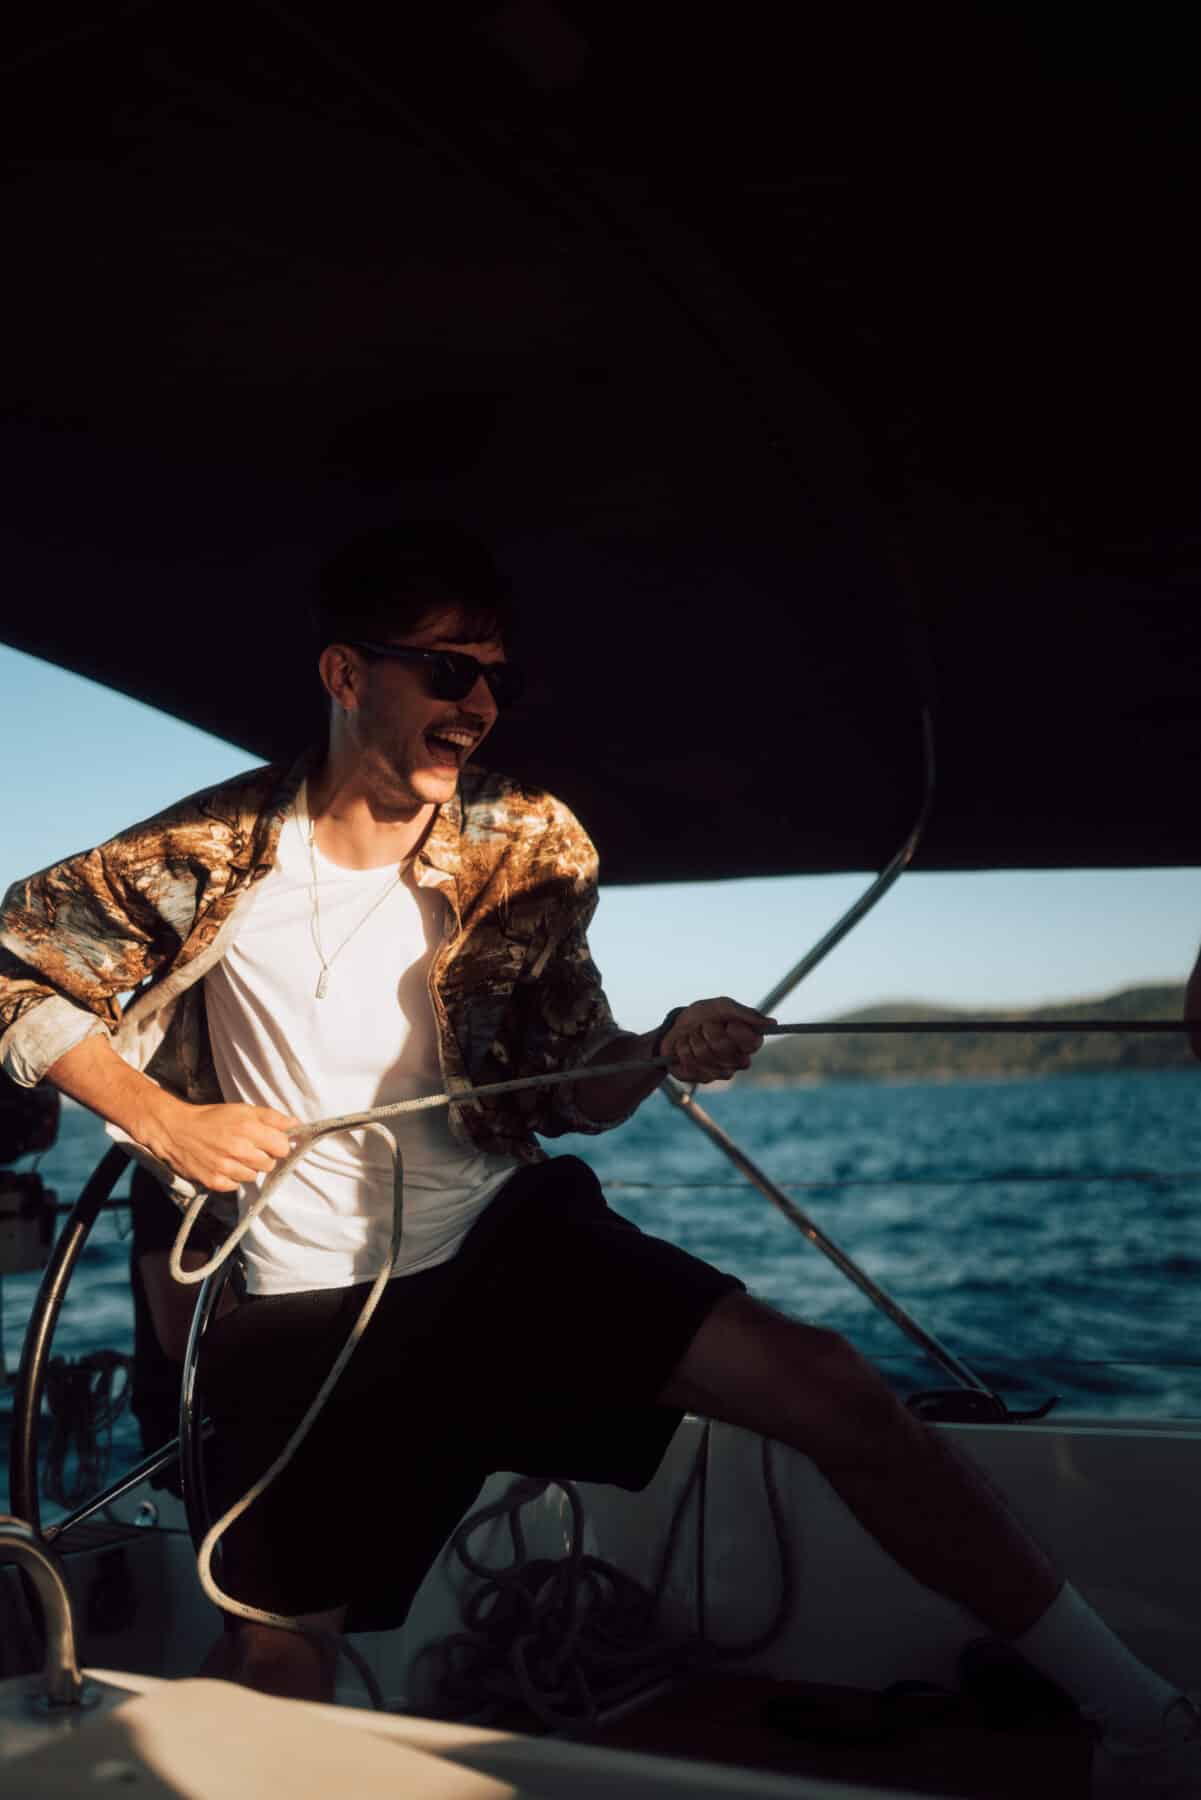 Ein Mann mit Sonnenbrille und geblümtem Hemd lächelt, während er auf seinem Segelurlaub ein sonnendurchflutetes Segelboot vor der Wasserkulisse steuert.